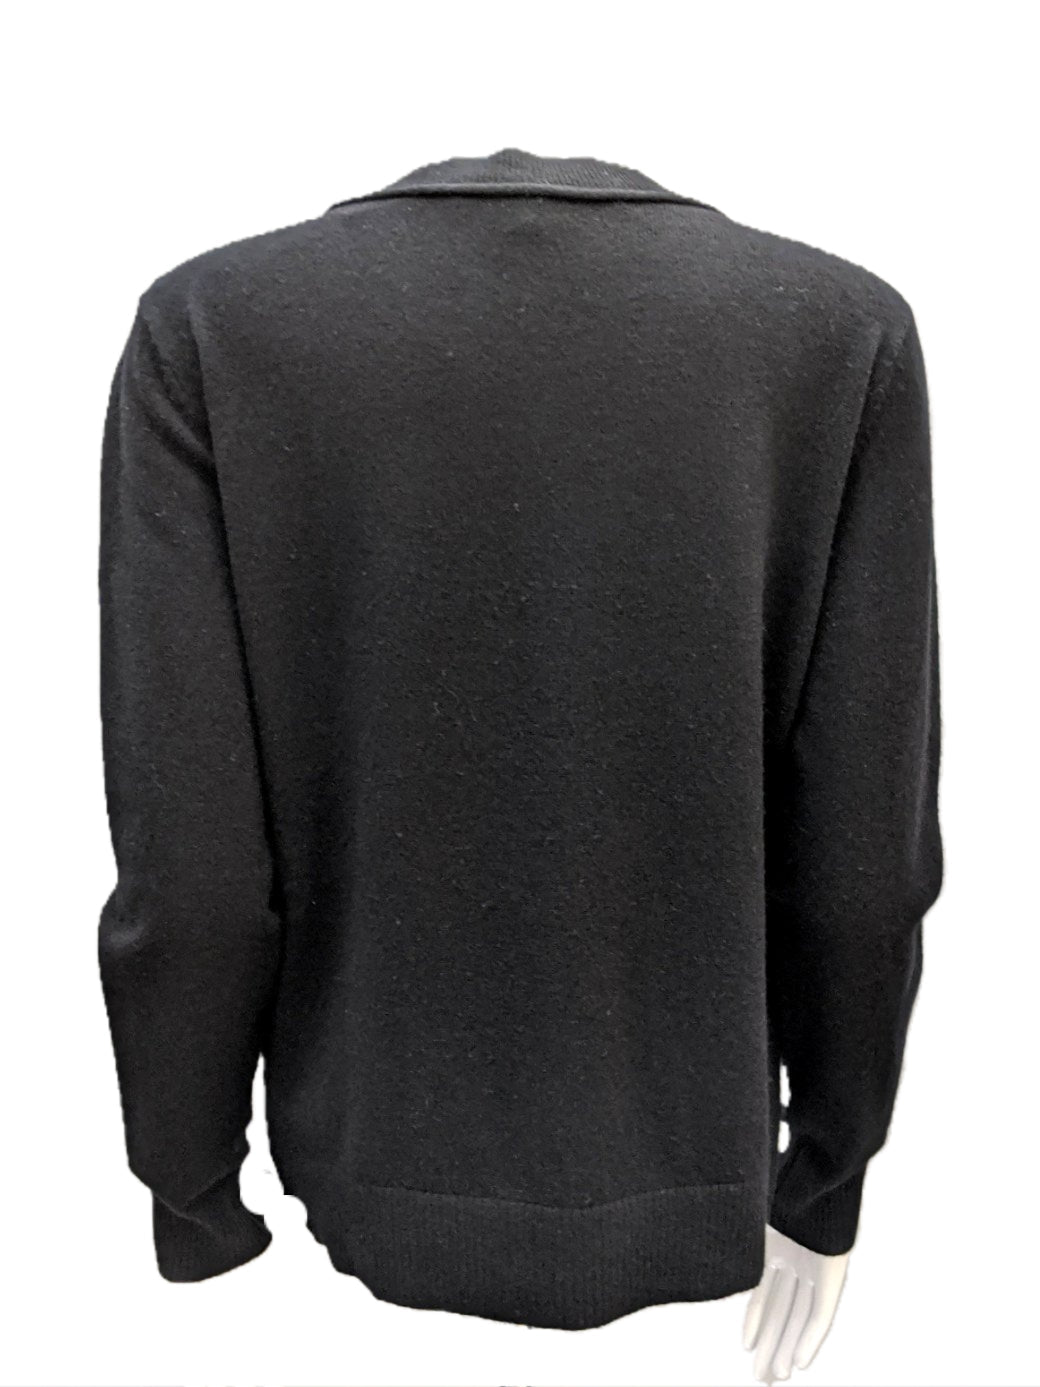 Sweater Cashmere by Diane Von Furstenburg Size M